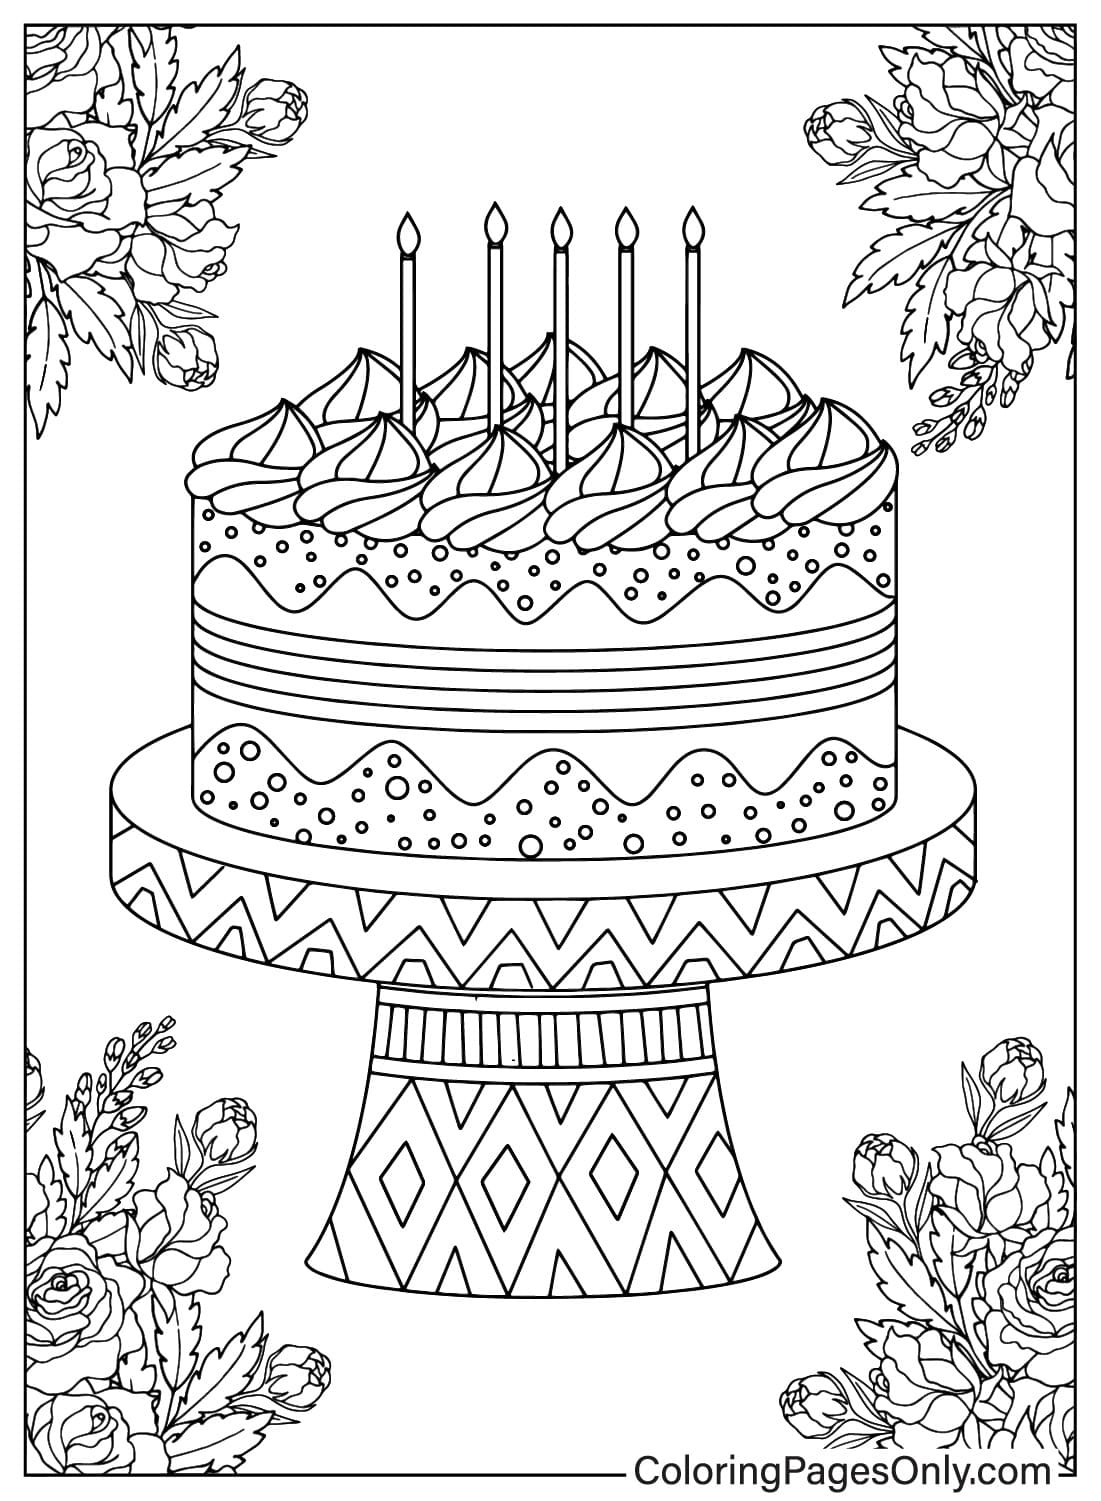 Раскраска именинного торта для печати от Birthday Cake